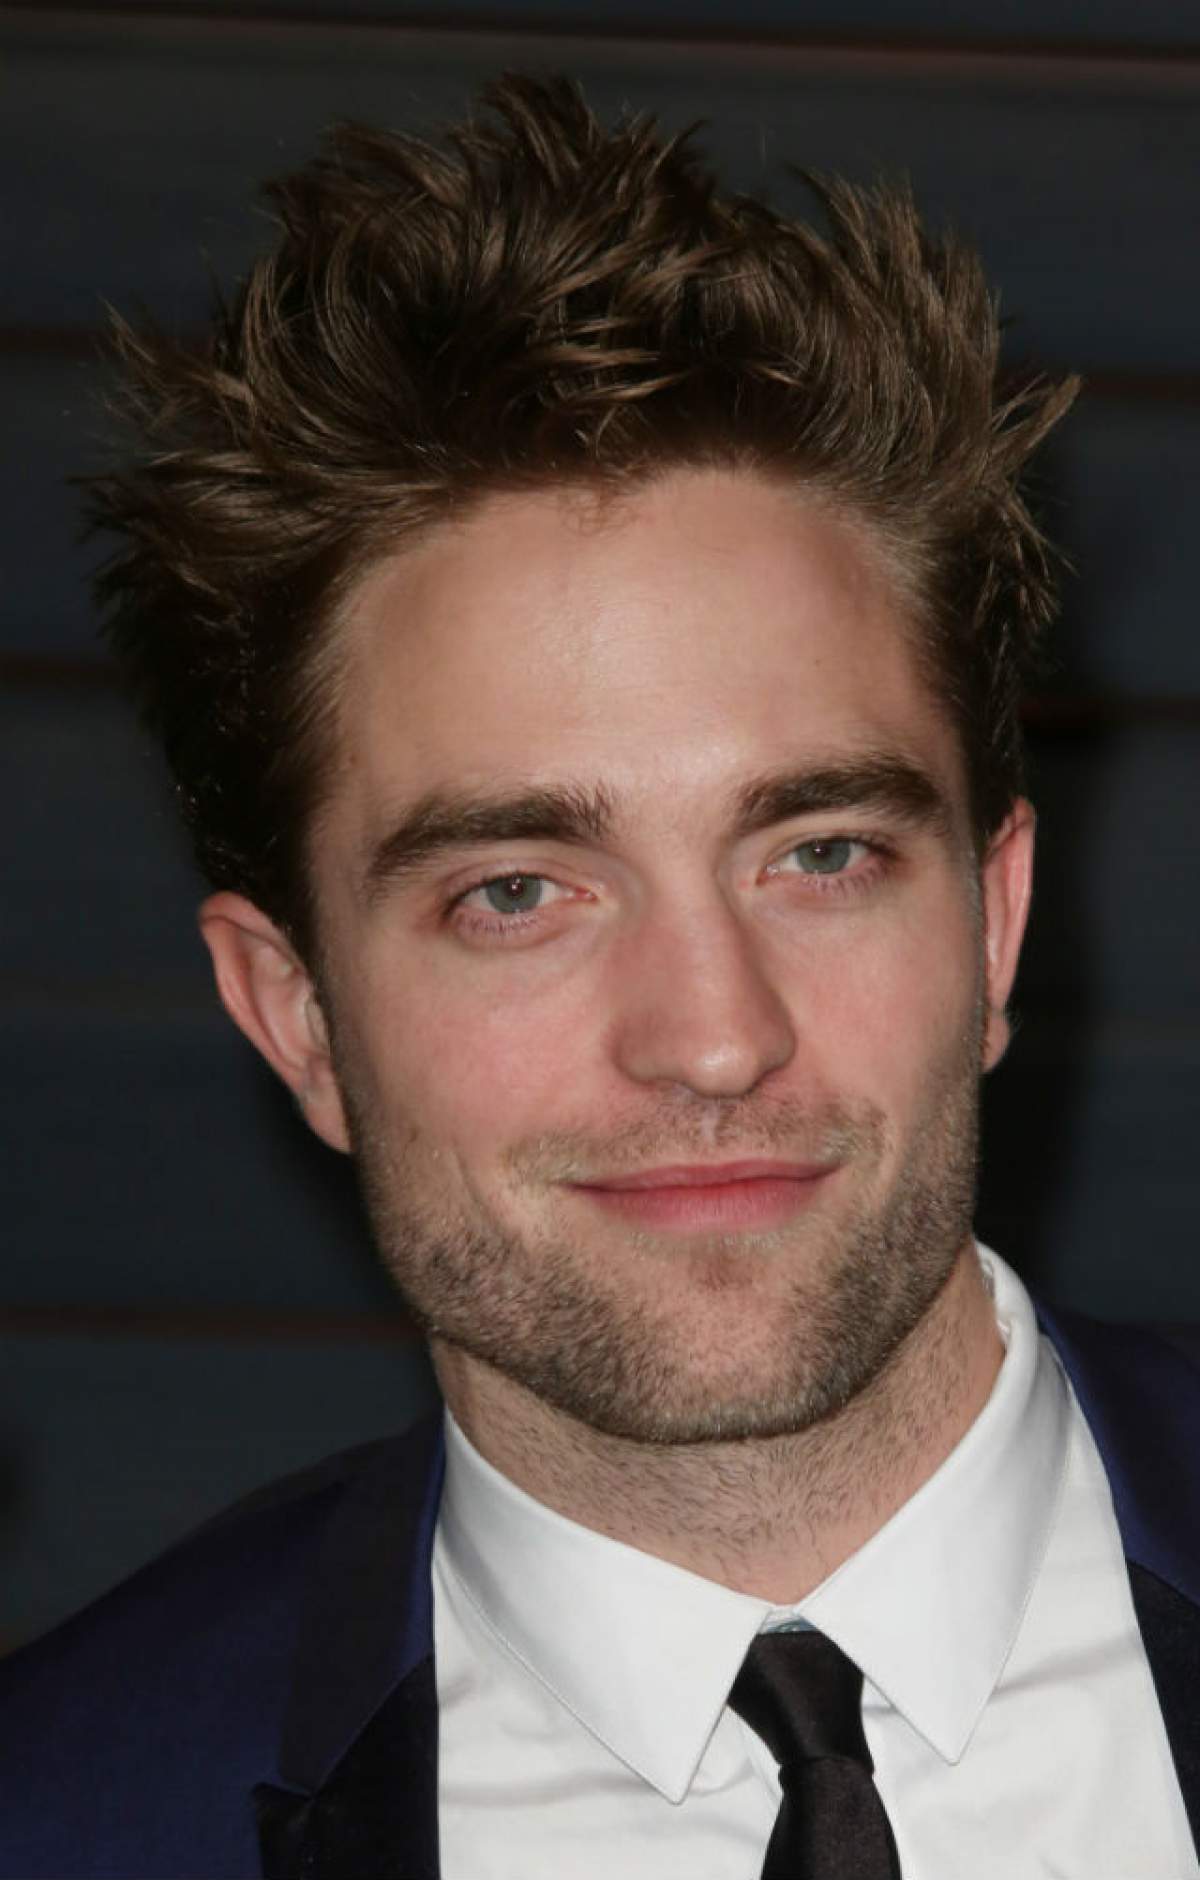 Nu mai suspinaţi, Robert Pattinson e luat! Bat clopote de nuntă?